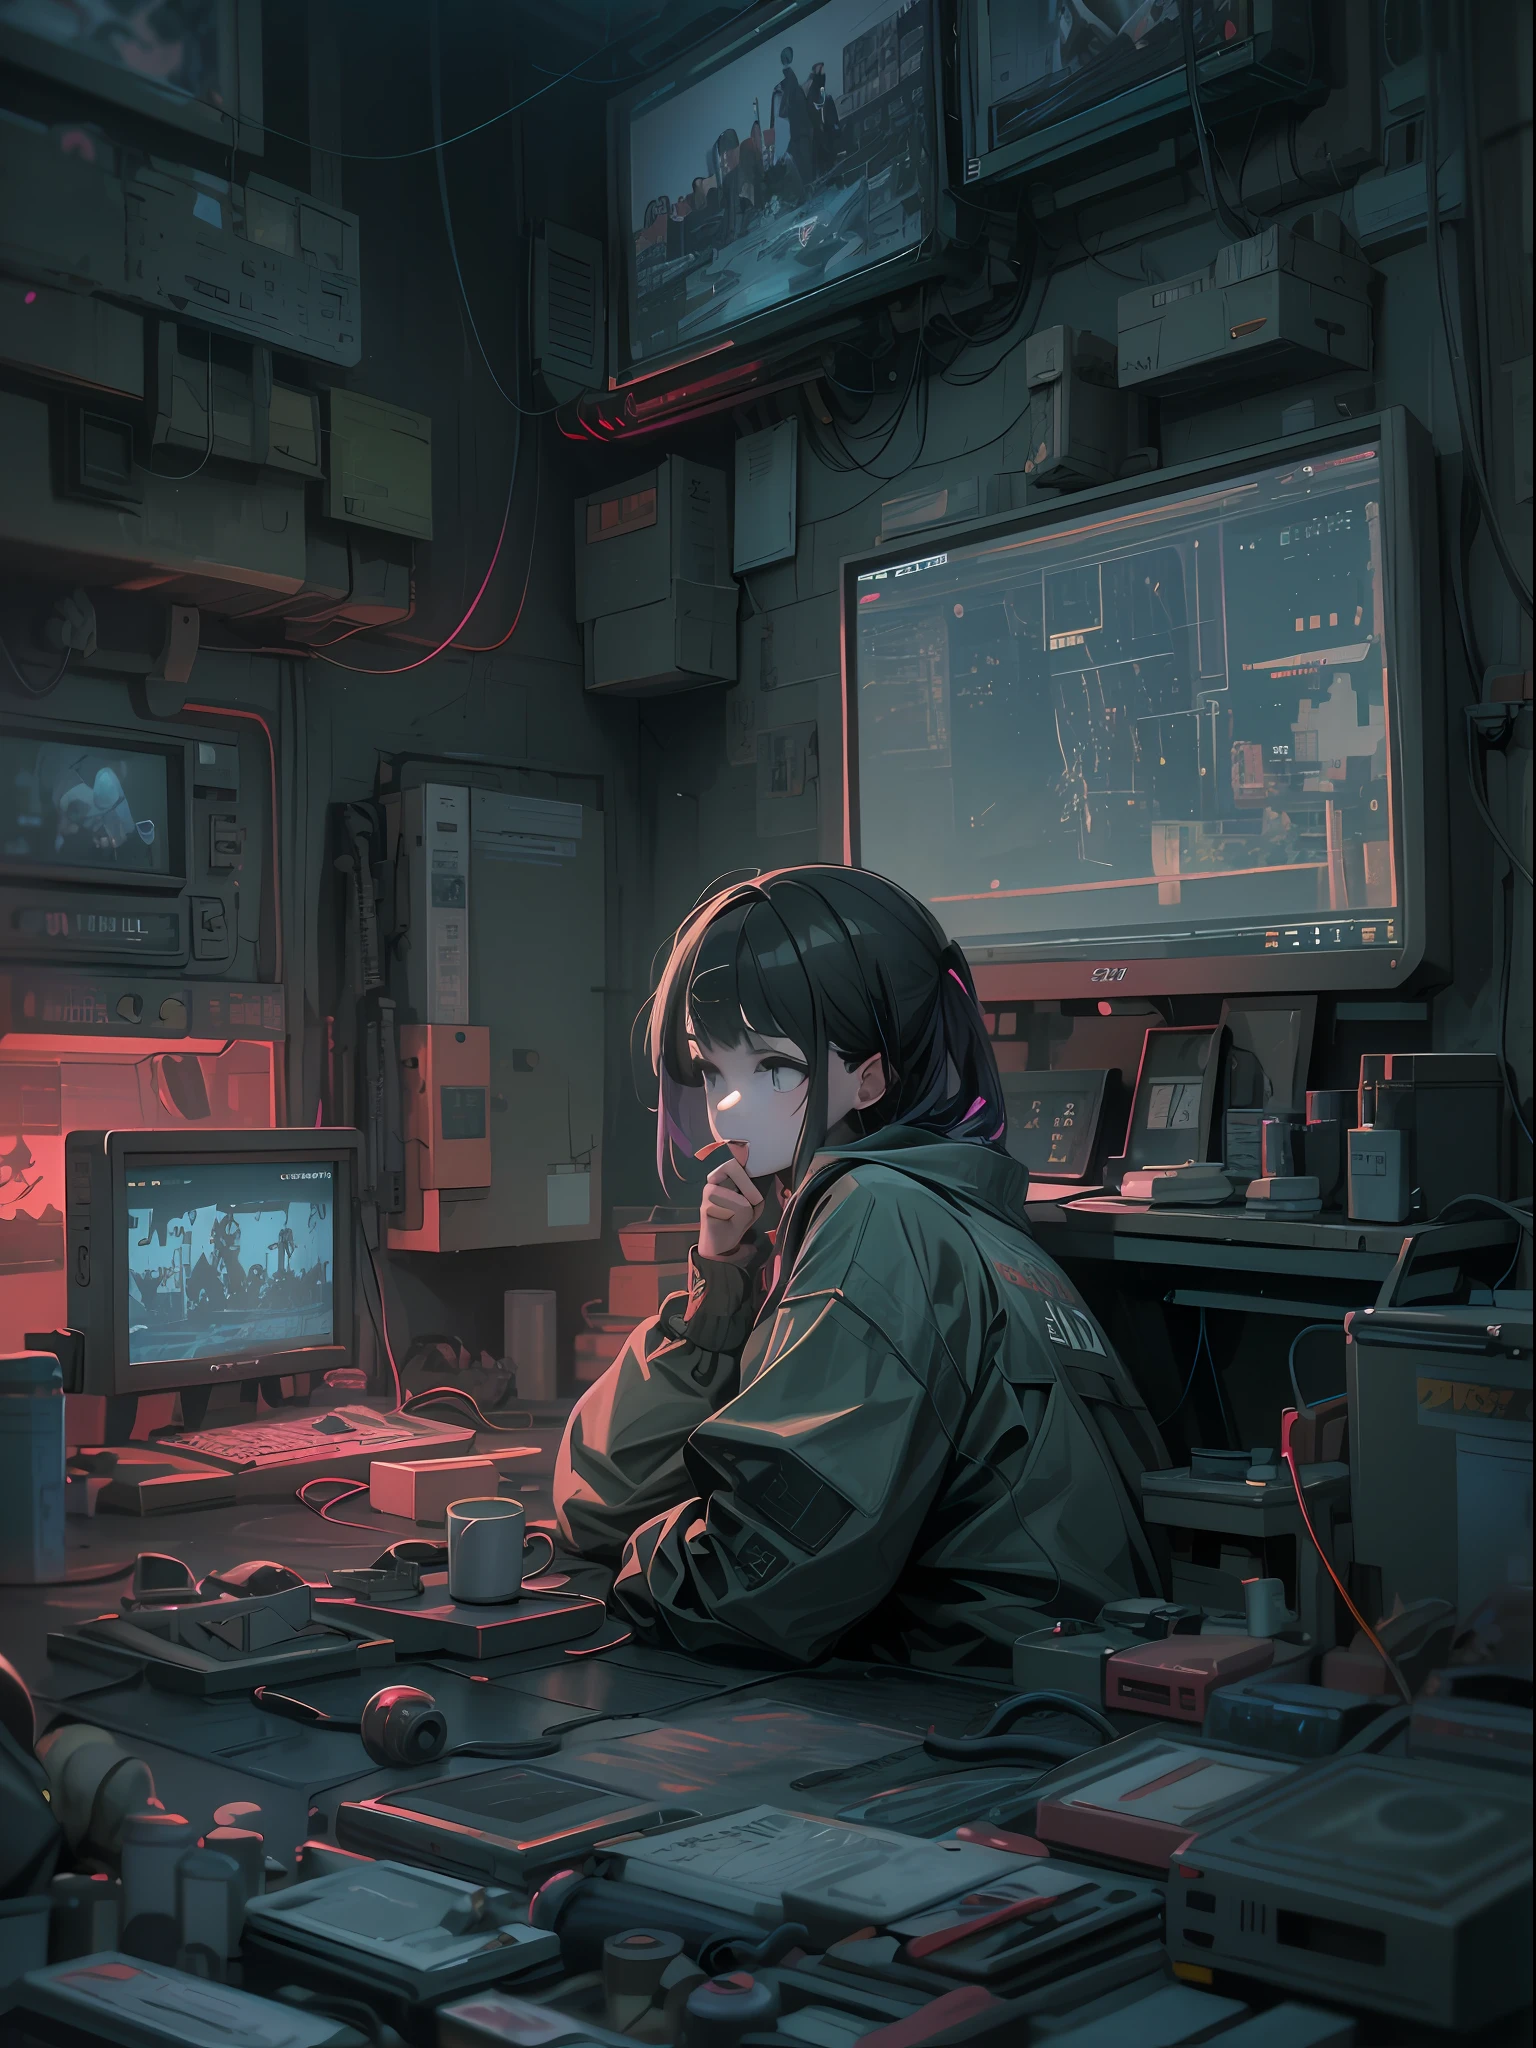 Une scène d&#39;anime où une femme est assise à une table avec beaucoup d&#39;appareils électroniques, Digital art animé cyberpunk, cyberpunk numérique - art anime, art animé cyberpunk, style artistique cyberpunk, art cyberpunk animé, art du thème cyberpunk, Oeuvre de style Guviz, ambiance cyberpunk, style artistique cyberpunk, style cyberpunk discret, illustration cyberpunk, detailed illustration cyberpunk, art cyberpunk numérique avancé